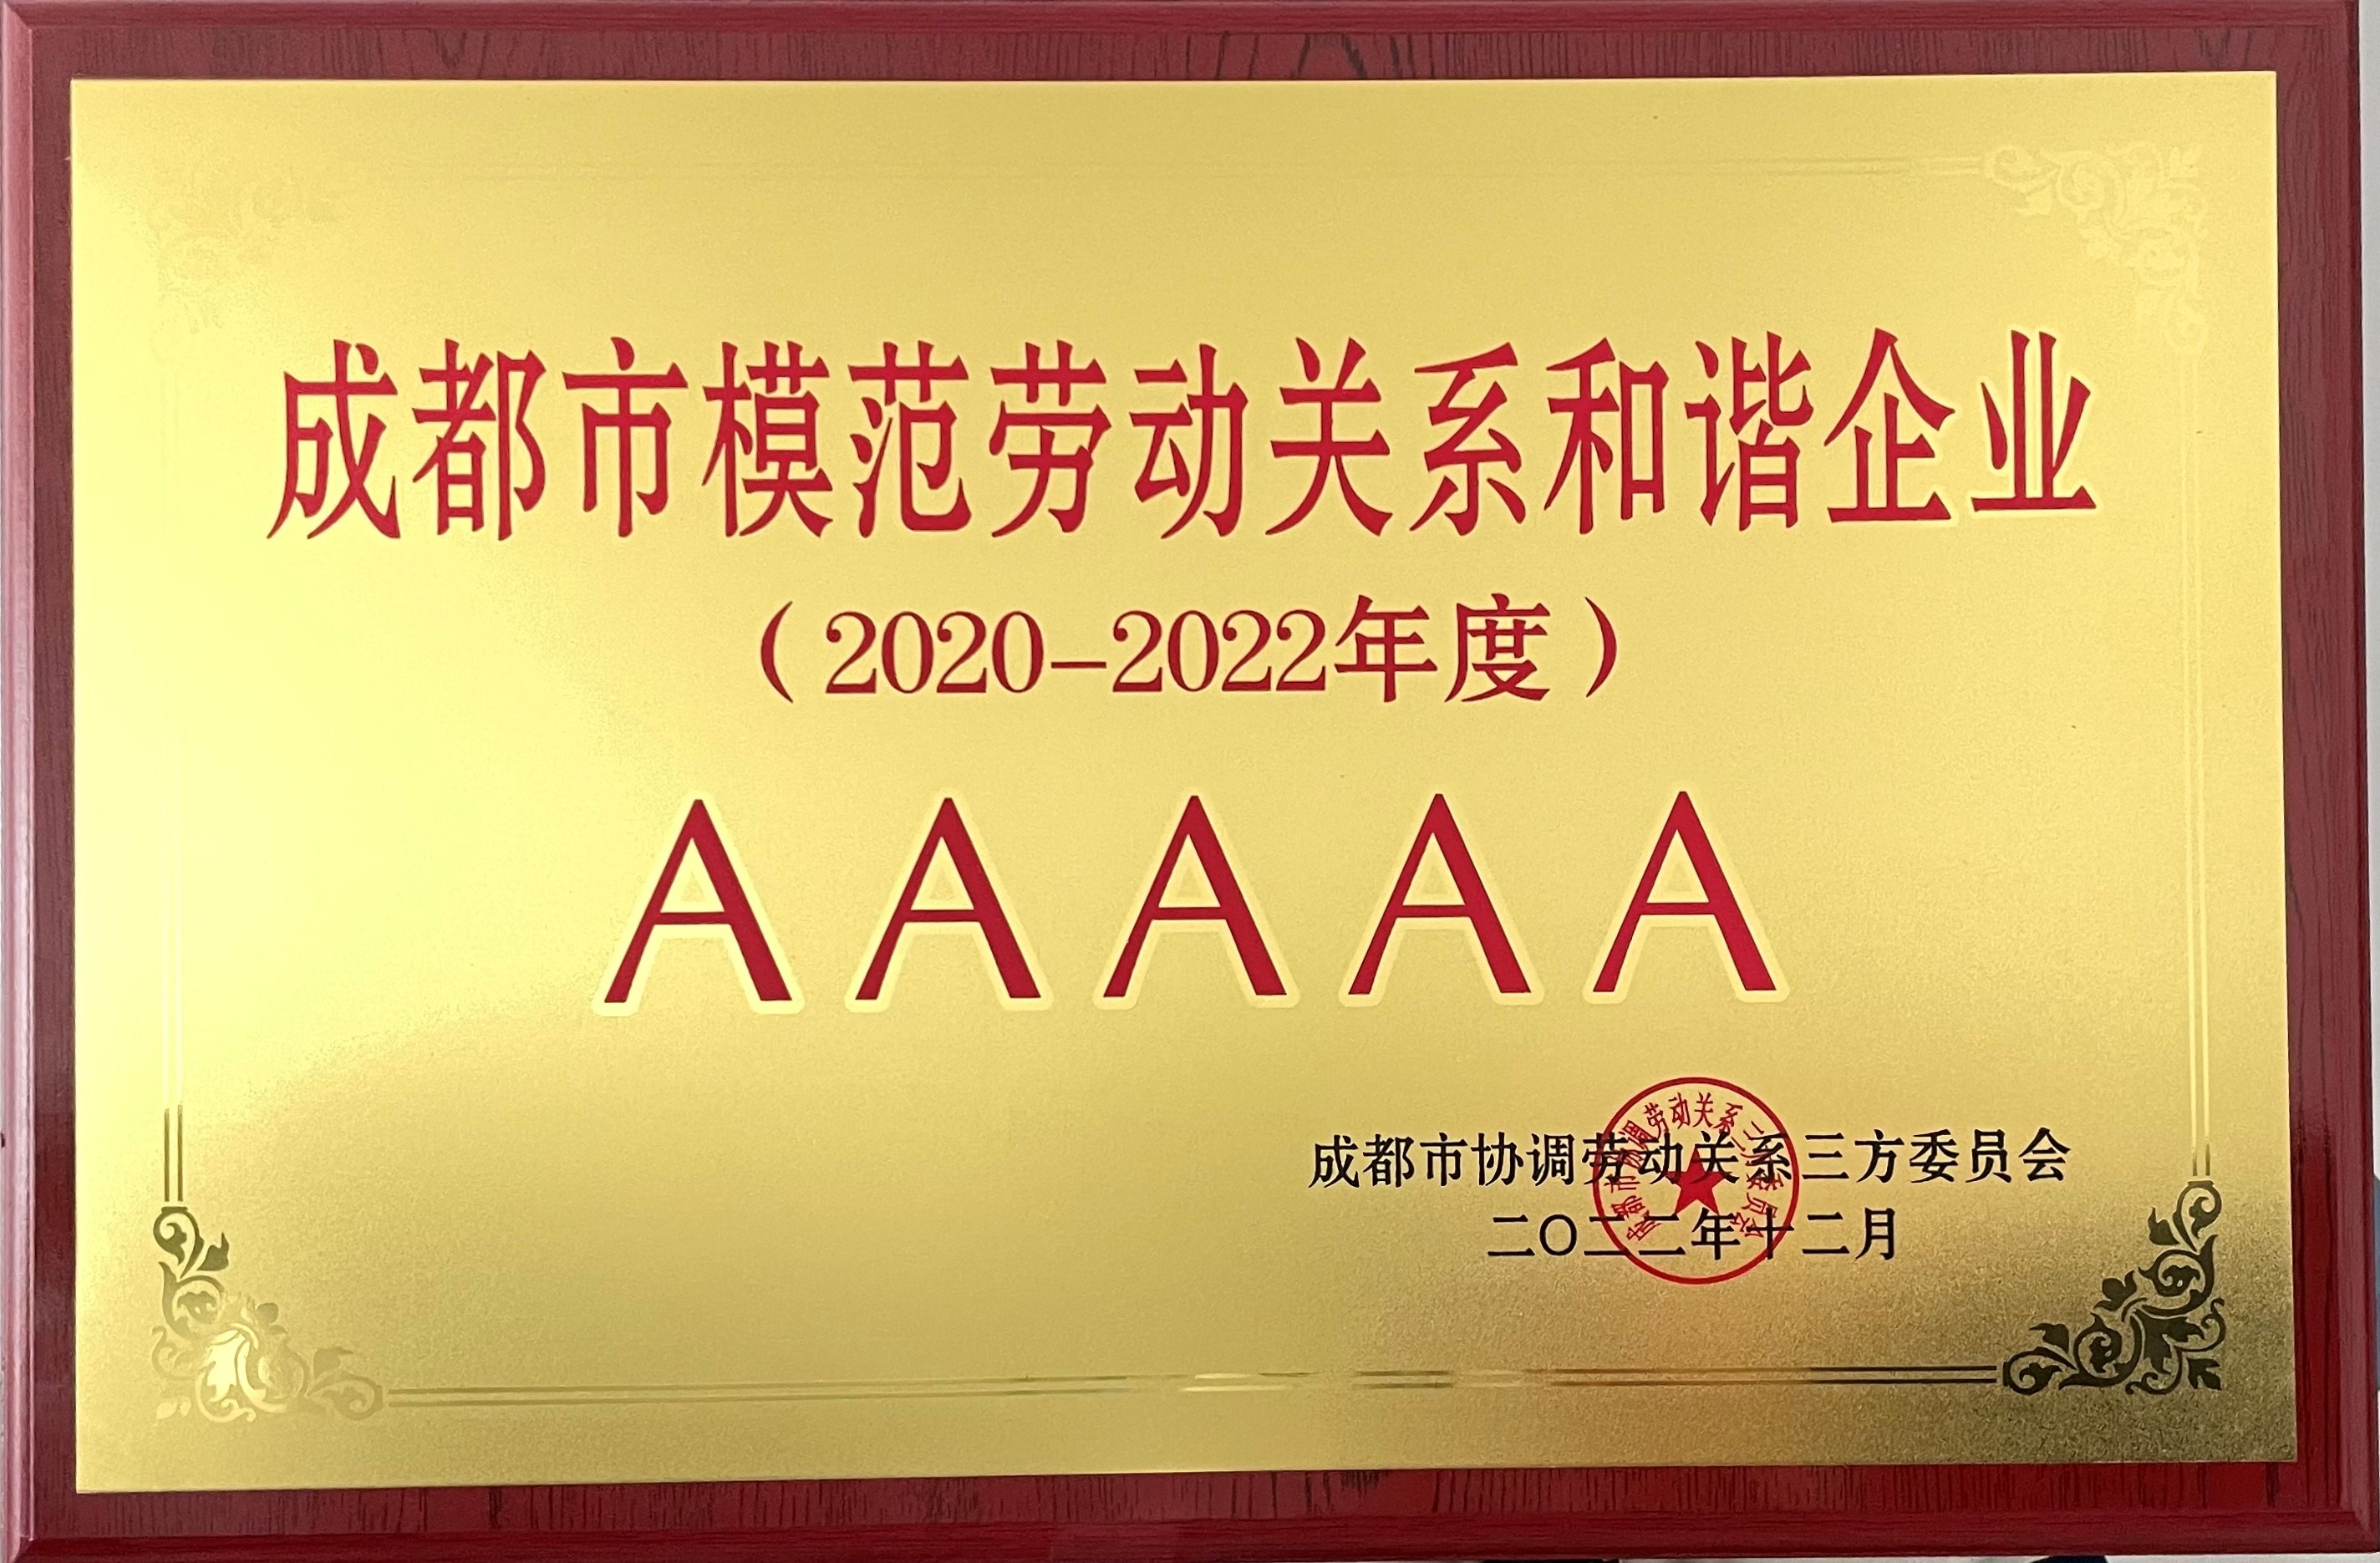 四川能投润嘉园林公司荣获AAAAA级成都市模范劳动关系和谐企业称号